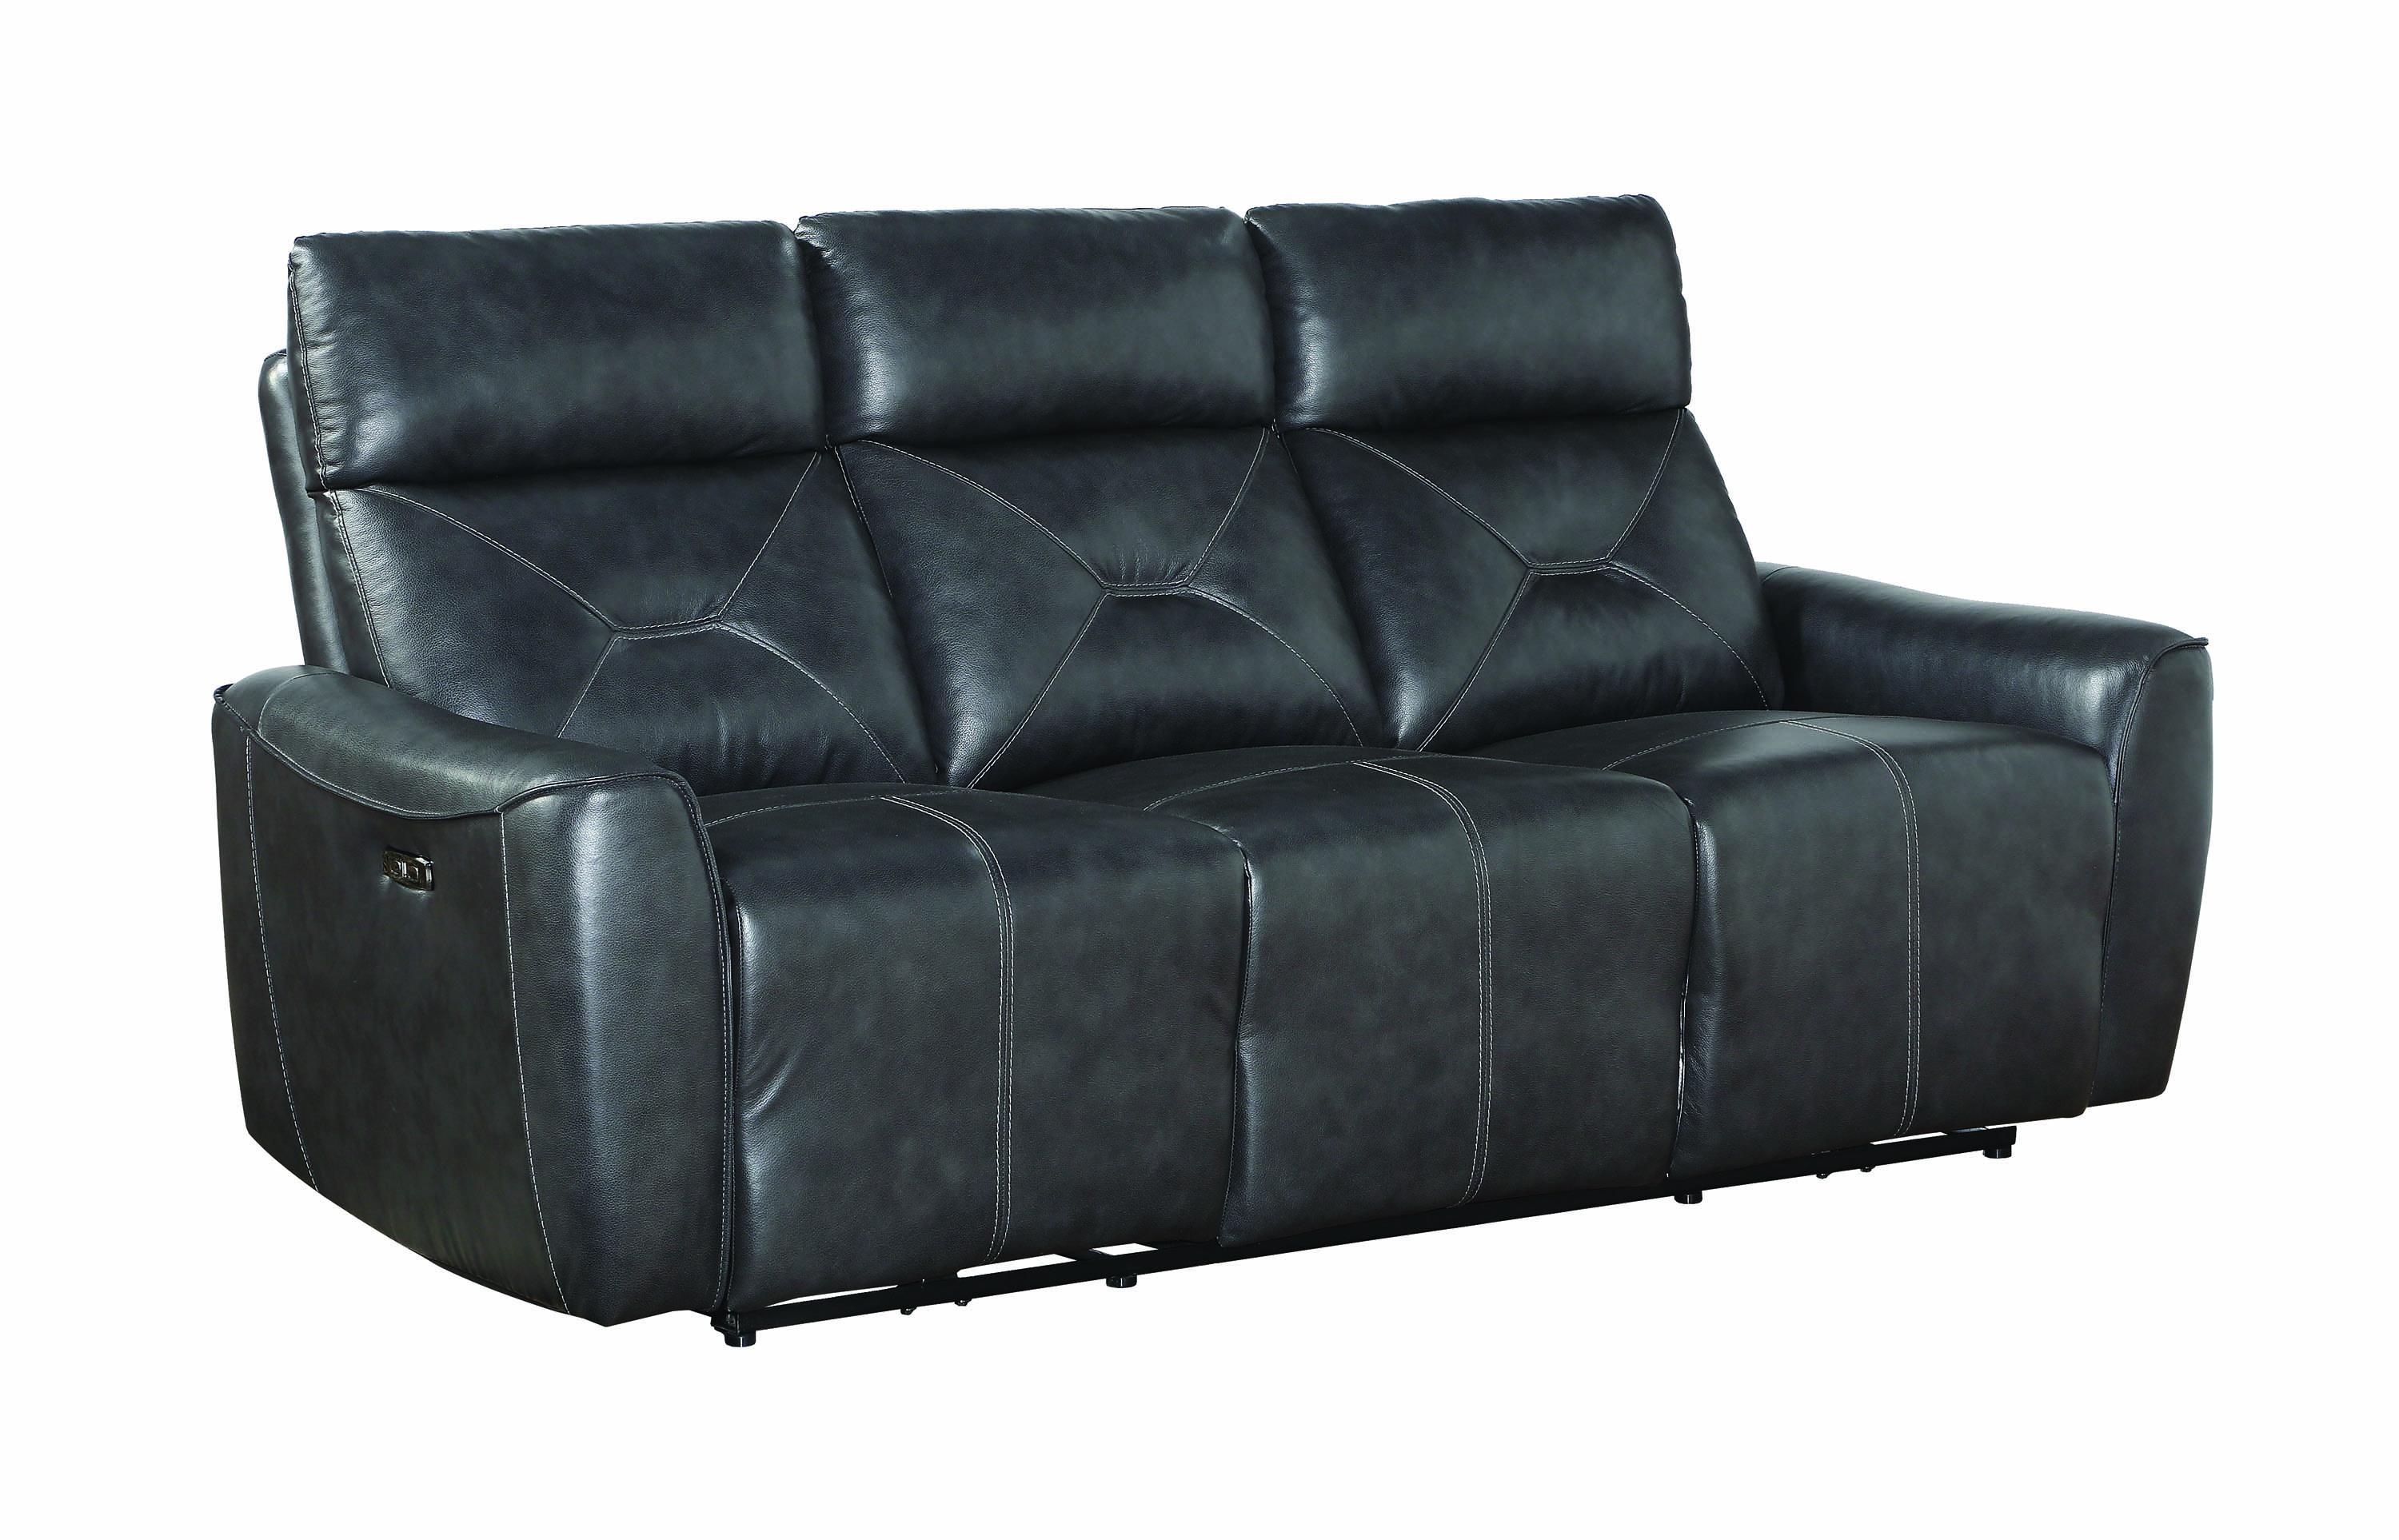 Modern Power2 sofa Jupiter 603241PP in Gray Leather